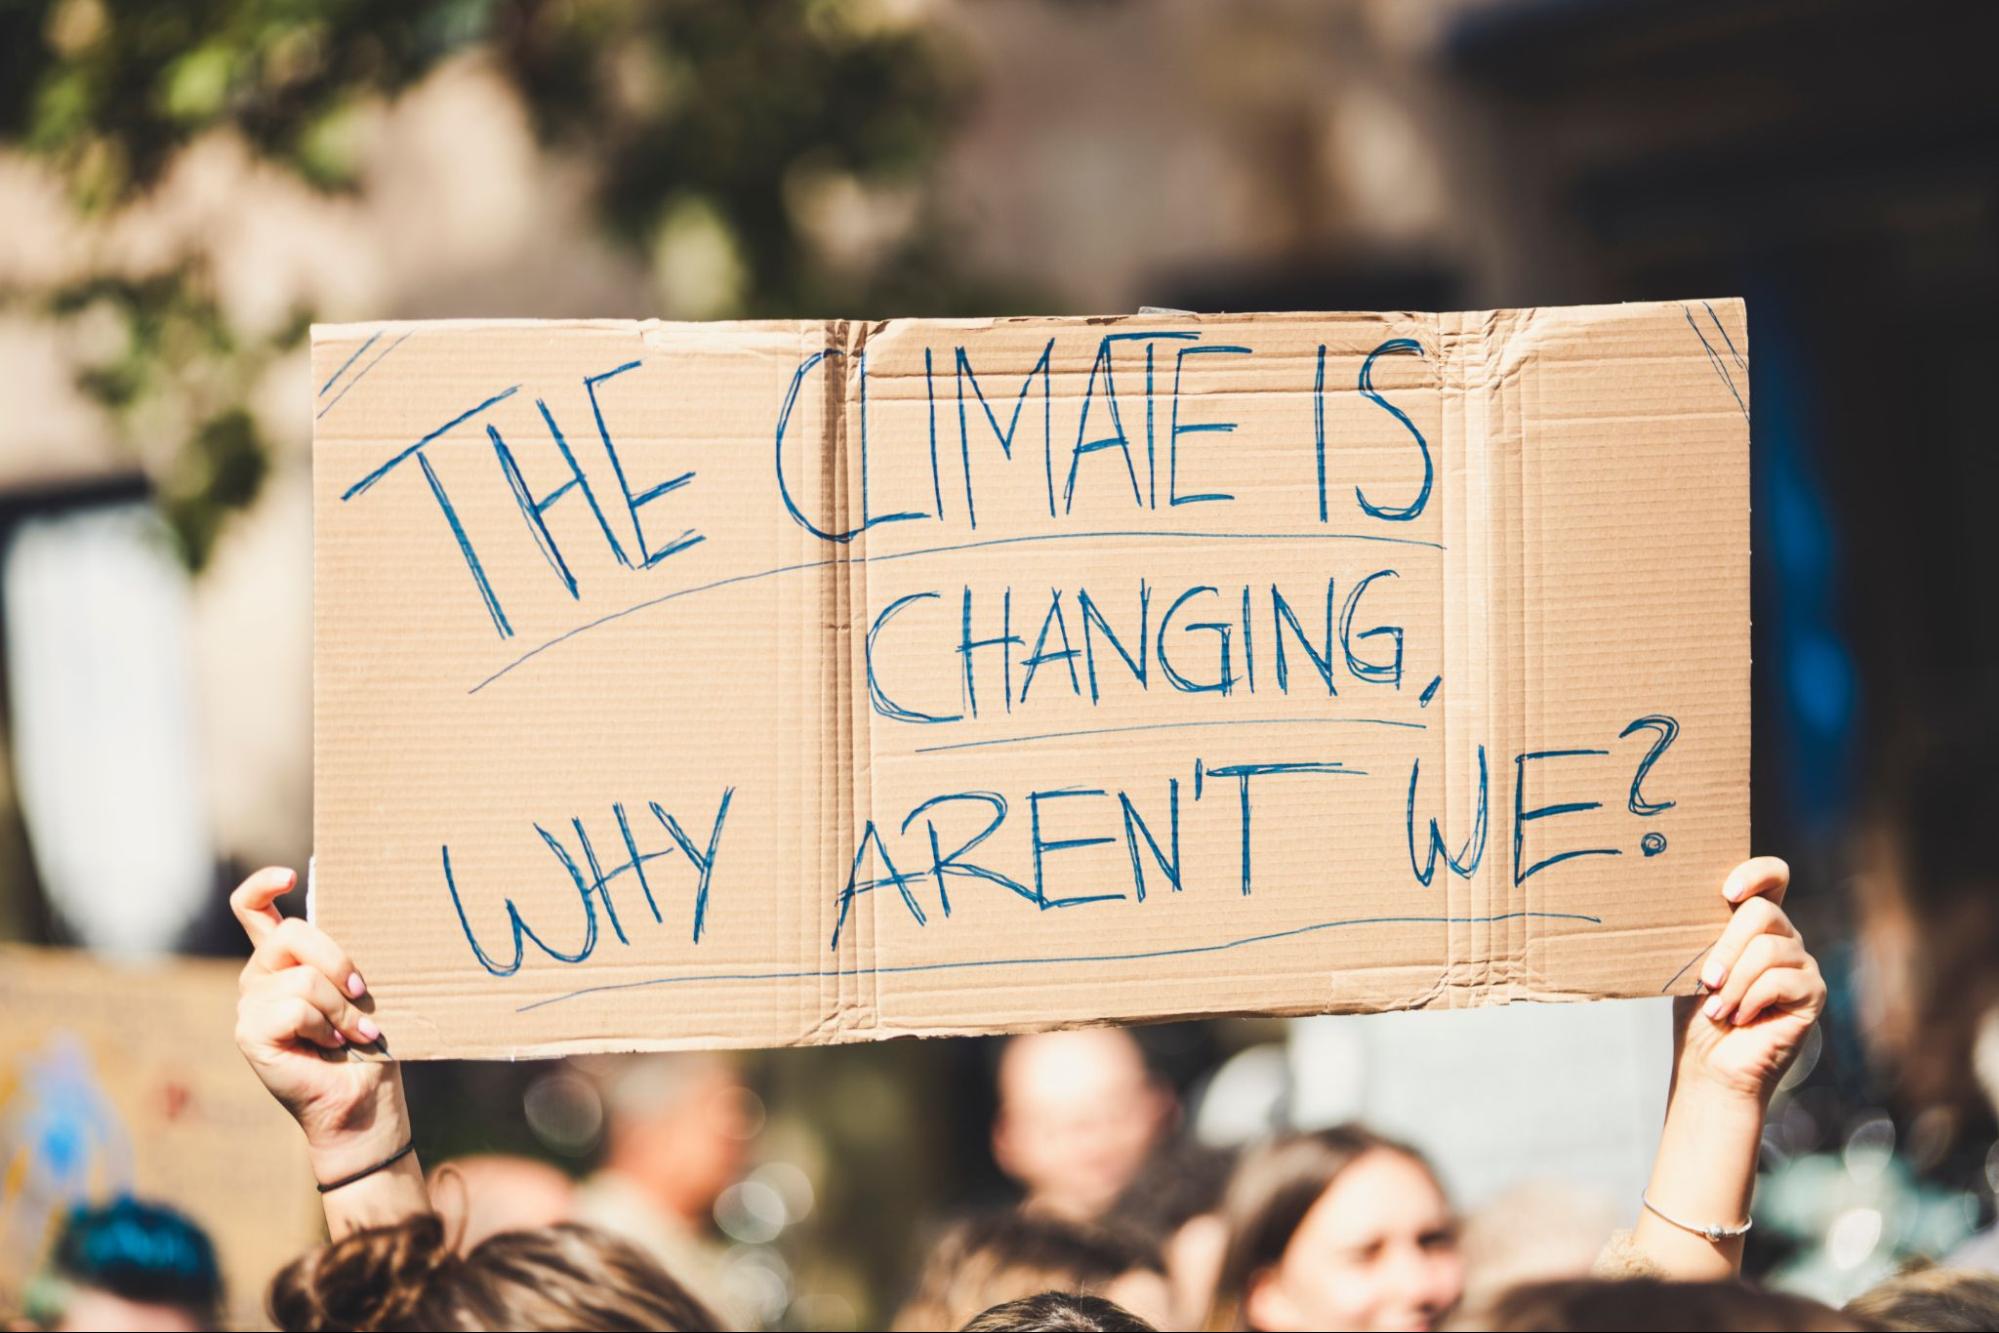 Brazos sosteniendo un cartel que dice: "El clima está cambiando, ¿por quénosotros no?" en una protesta por elclima